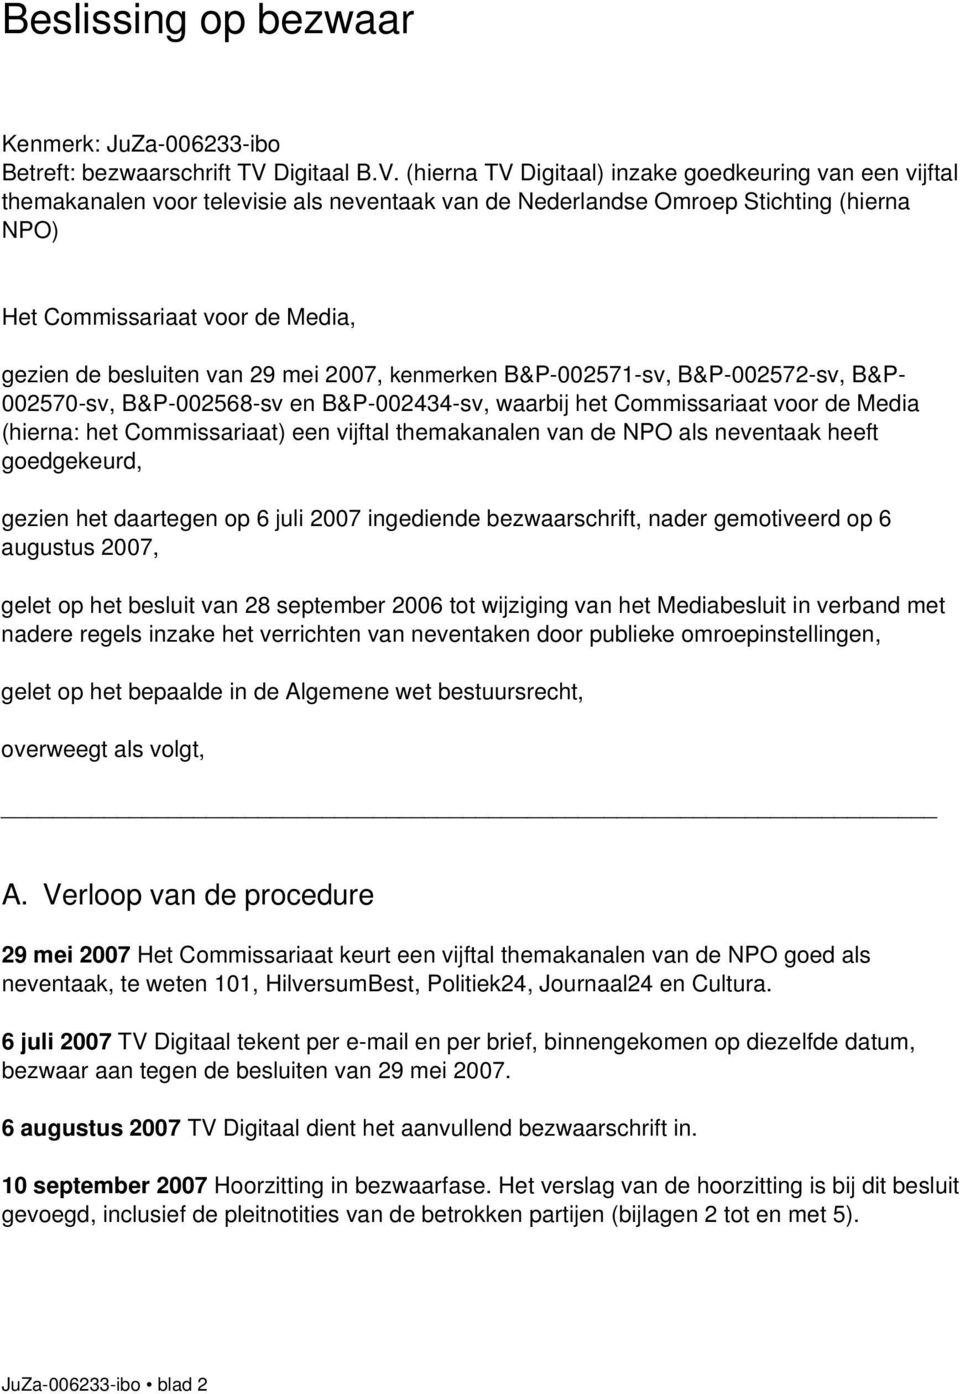 (hierna TV Digitaal) inzake goedkeuring van een vijftal themakanalen voor televisie als neventaak van de Nederlandse Omroep Stichting (hierna NPO) Het Commissariaat voor de Media, gezien de besluiten